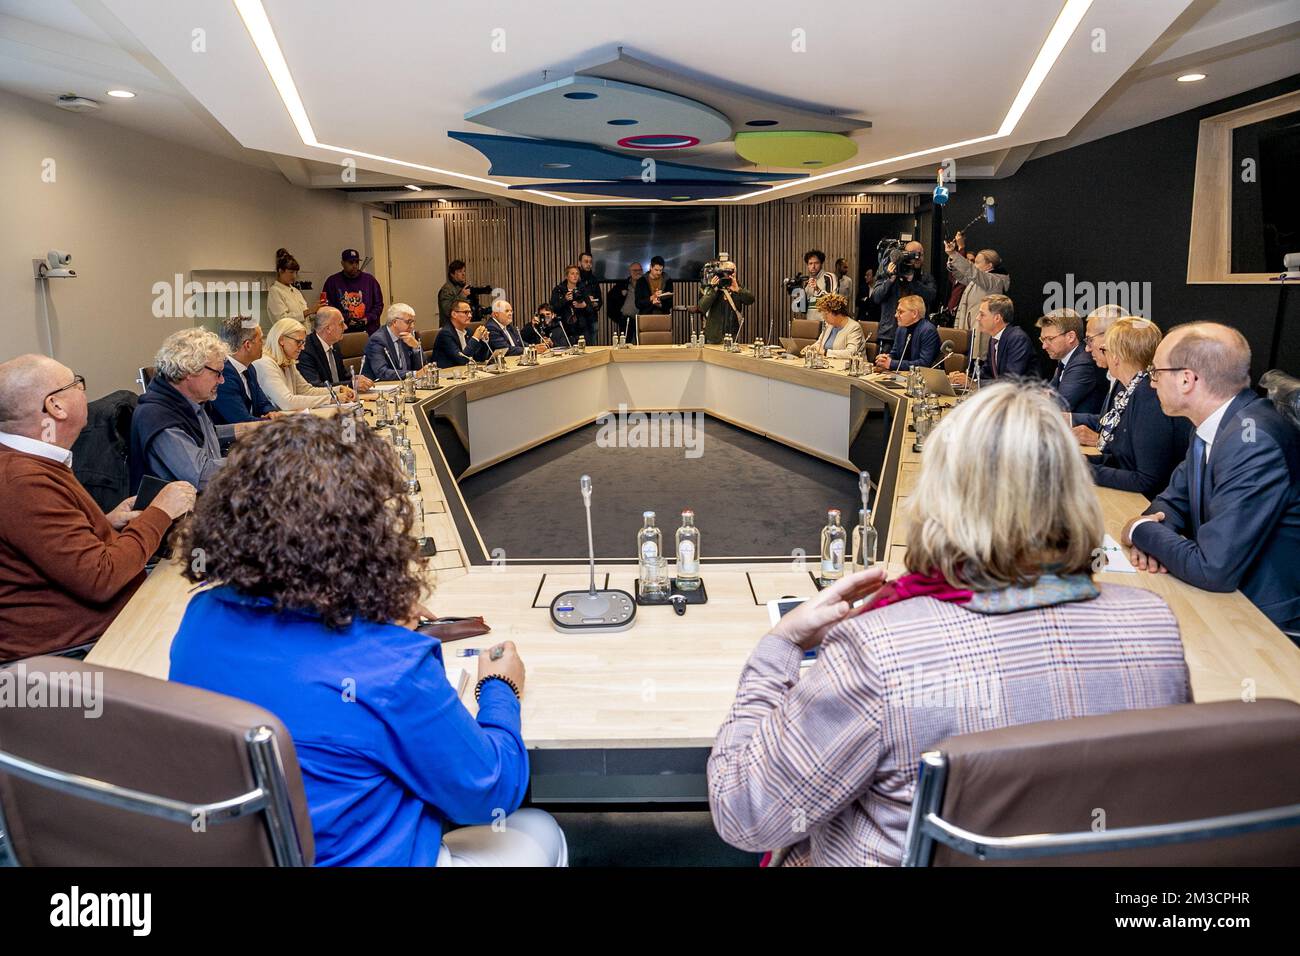 Die Abbildung zeigt ein Treffen des Premierministers mit der Gruppe von 10 Mitgliedern (Groep van Tien - Groupe de Dix), einer Auswahl von Sozialpartnern, darunter Gewerkschaftsvertreter und Arbeitgeberorganisationen, am Dienstag, den 27. September 2022 in Brüssel. Auf der Tagesordnung des Treffens stehen Maßnahmen der Regierung zu den Energierechnungen und laufende Themen zum sozialen Dialog. BELGA FOTO HATIM KAGHAT Stockfoto